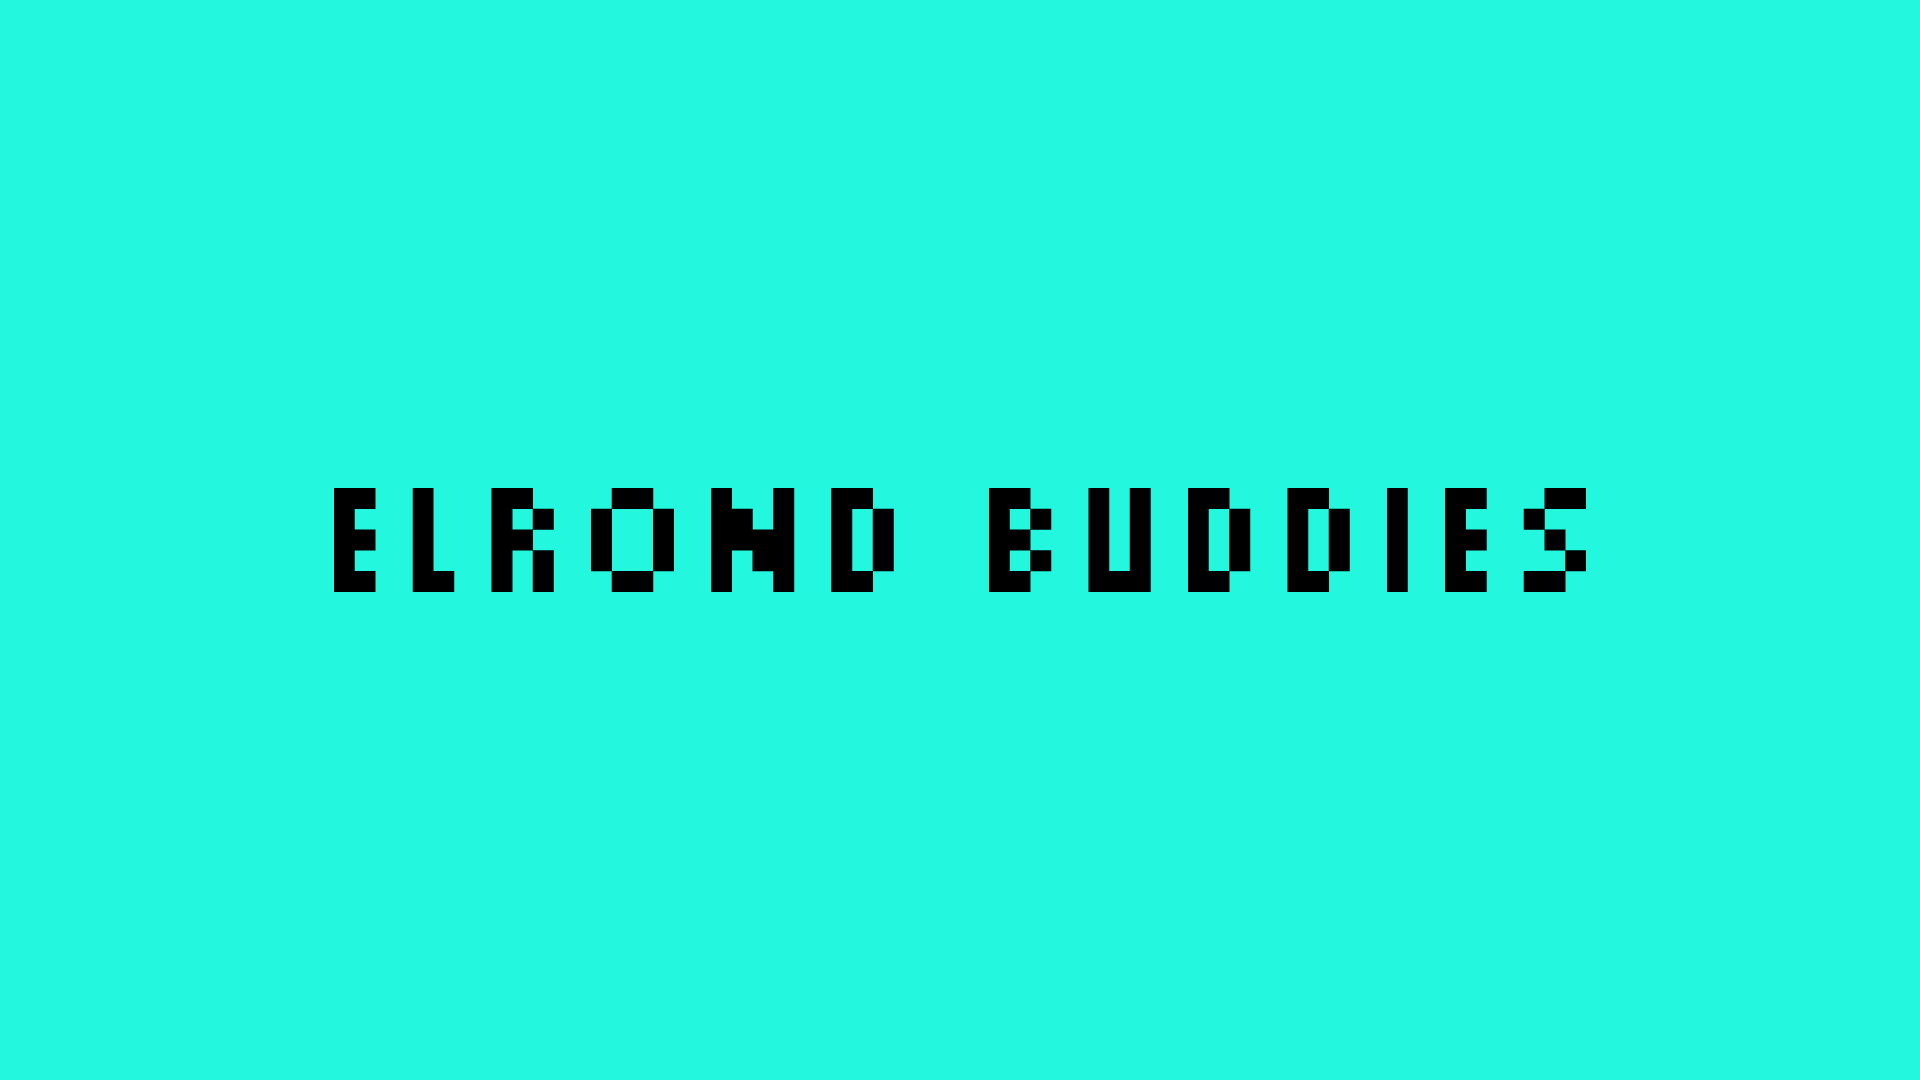 Elrond Buddies